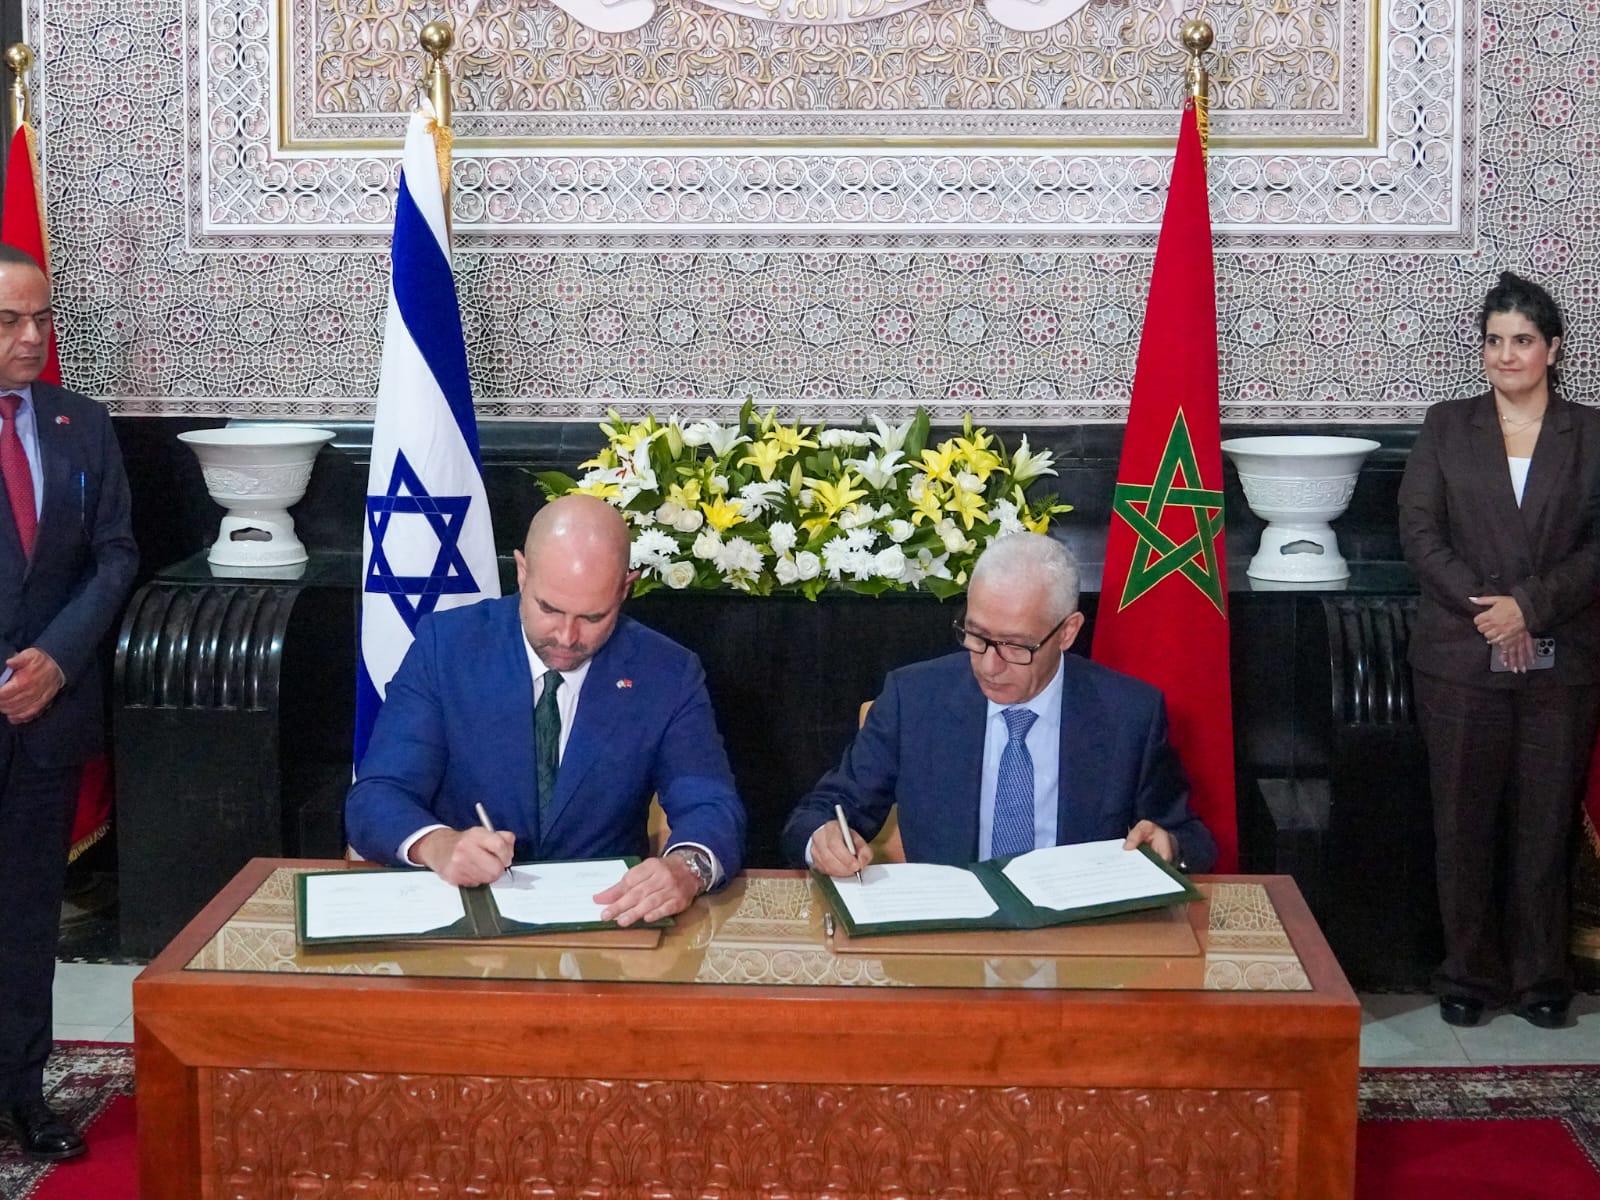 Maroc-Israël: la Chambre des représentants et la Knesset renforcent leur coopération